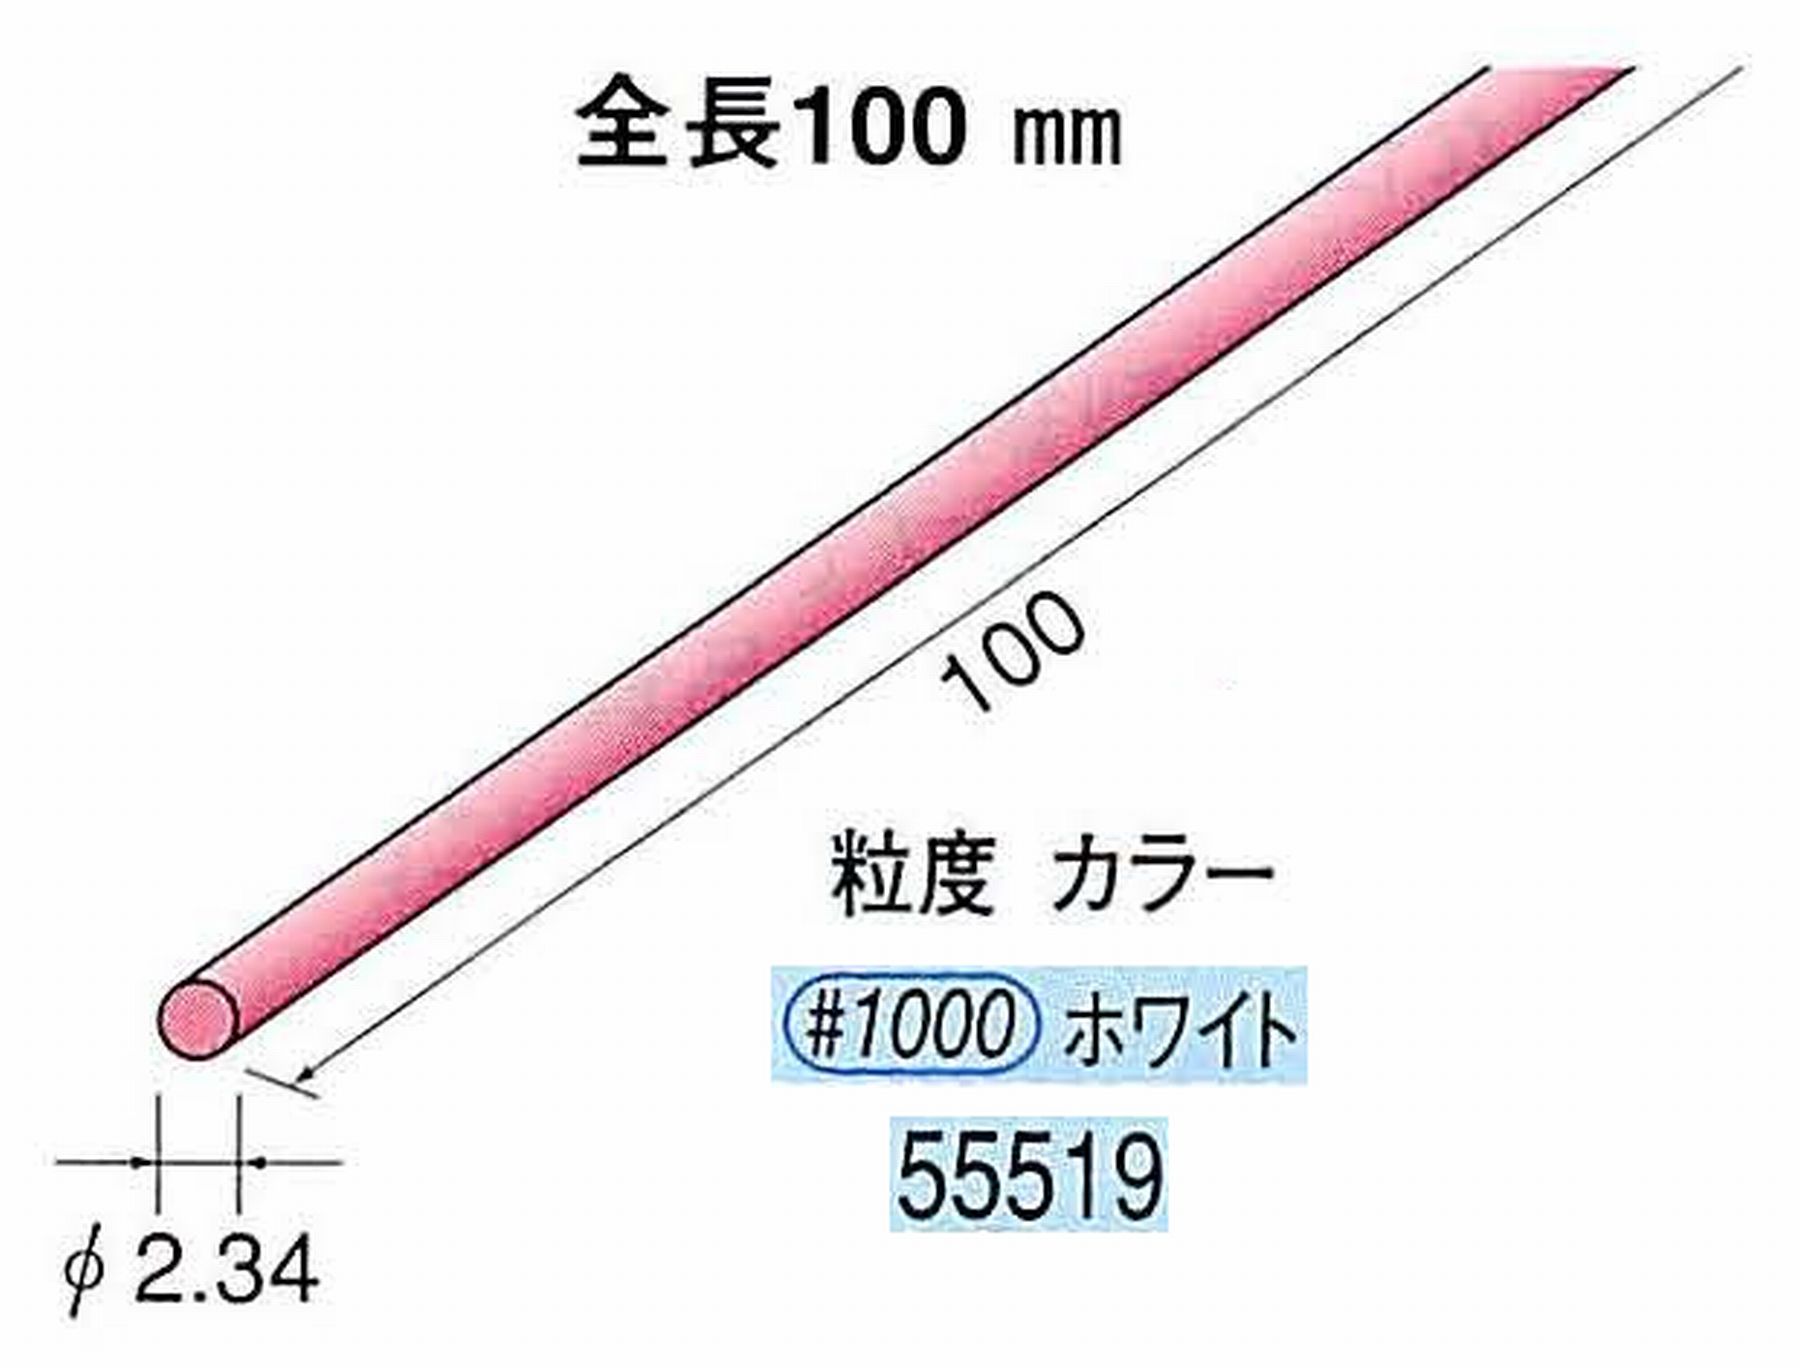 ナカニシ/NAKANISHI セラファイバー砥石 全長100mm ホワイト φ2.34mm 55519